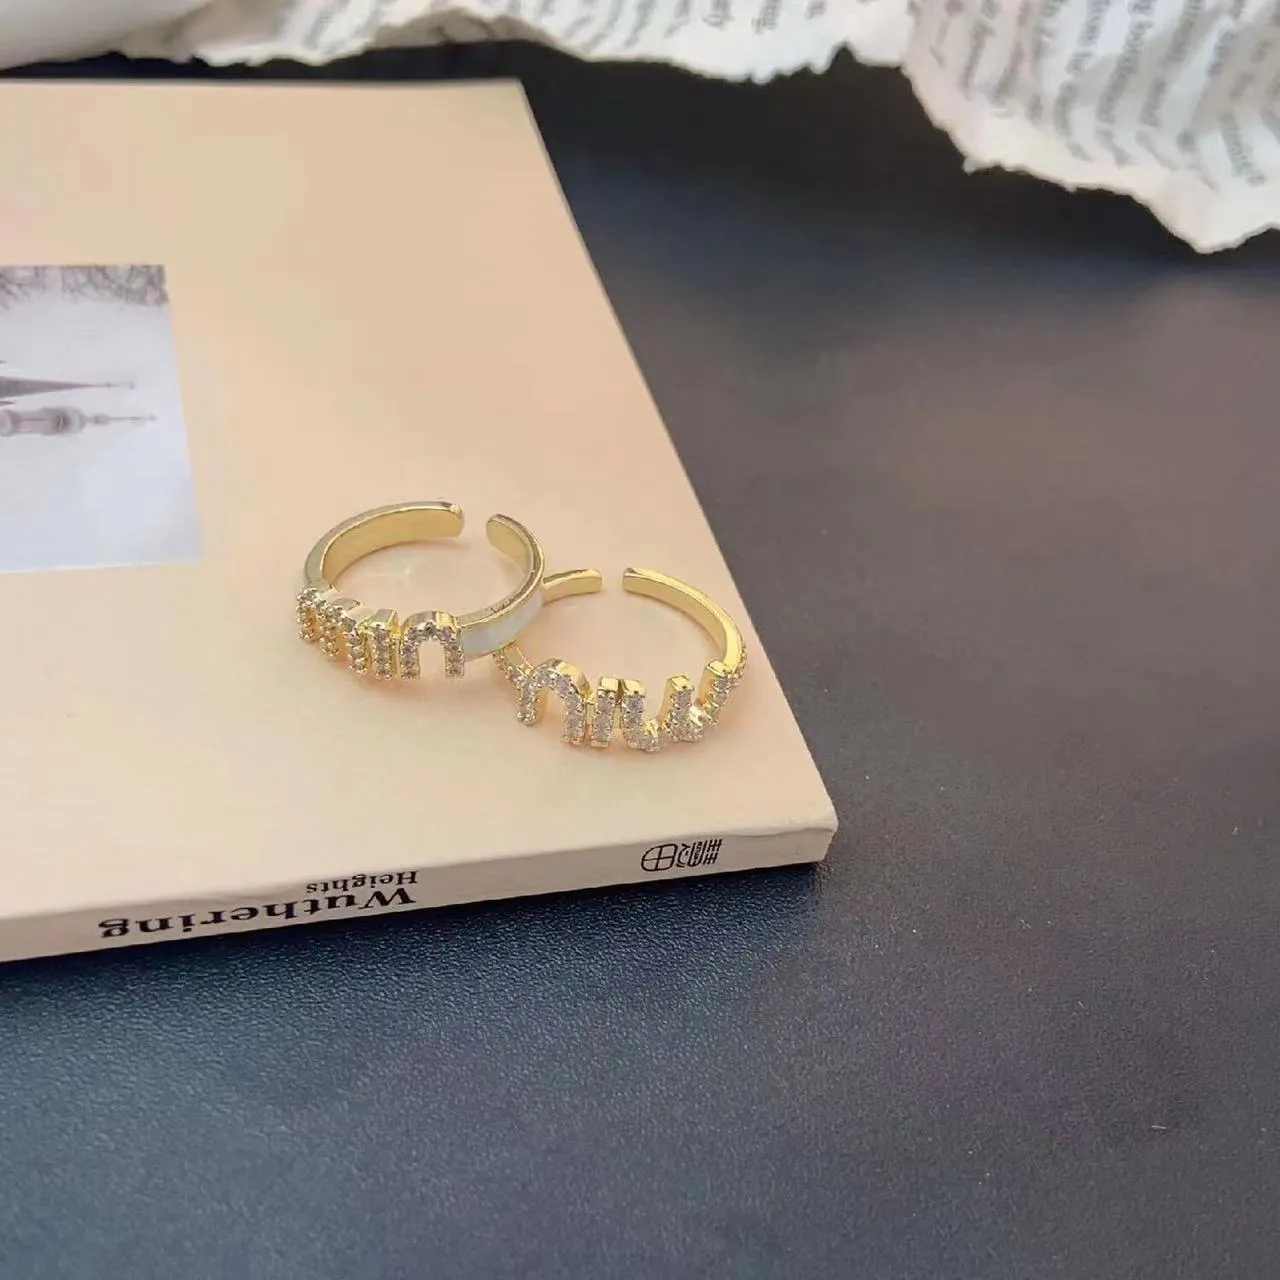 Zircon Miu kvinnors öppna ring med elegant stil och pekfingerring med hög känsla, liten design, staplad brevring